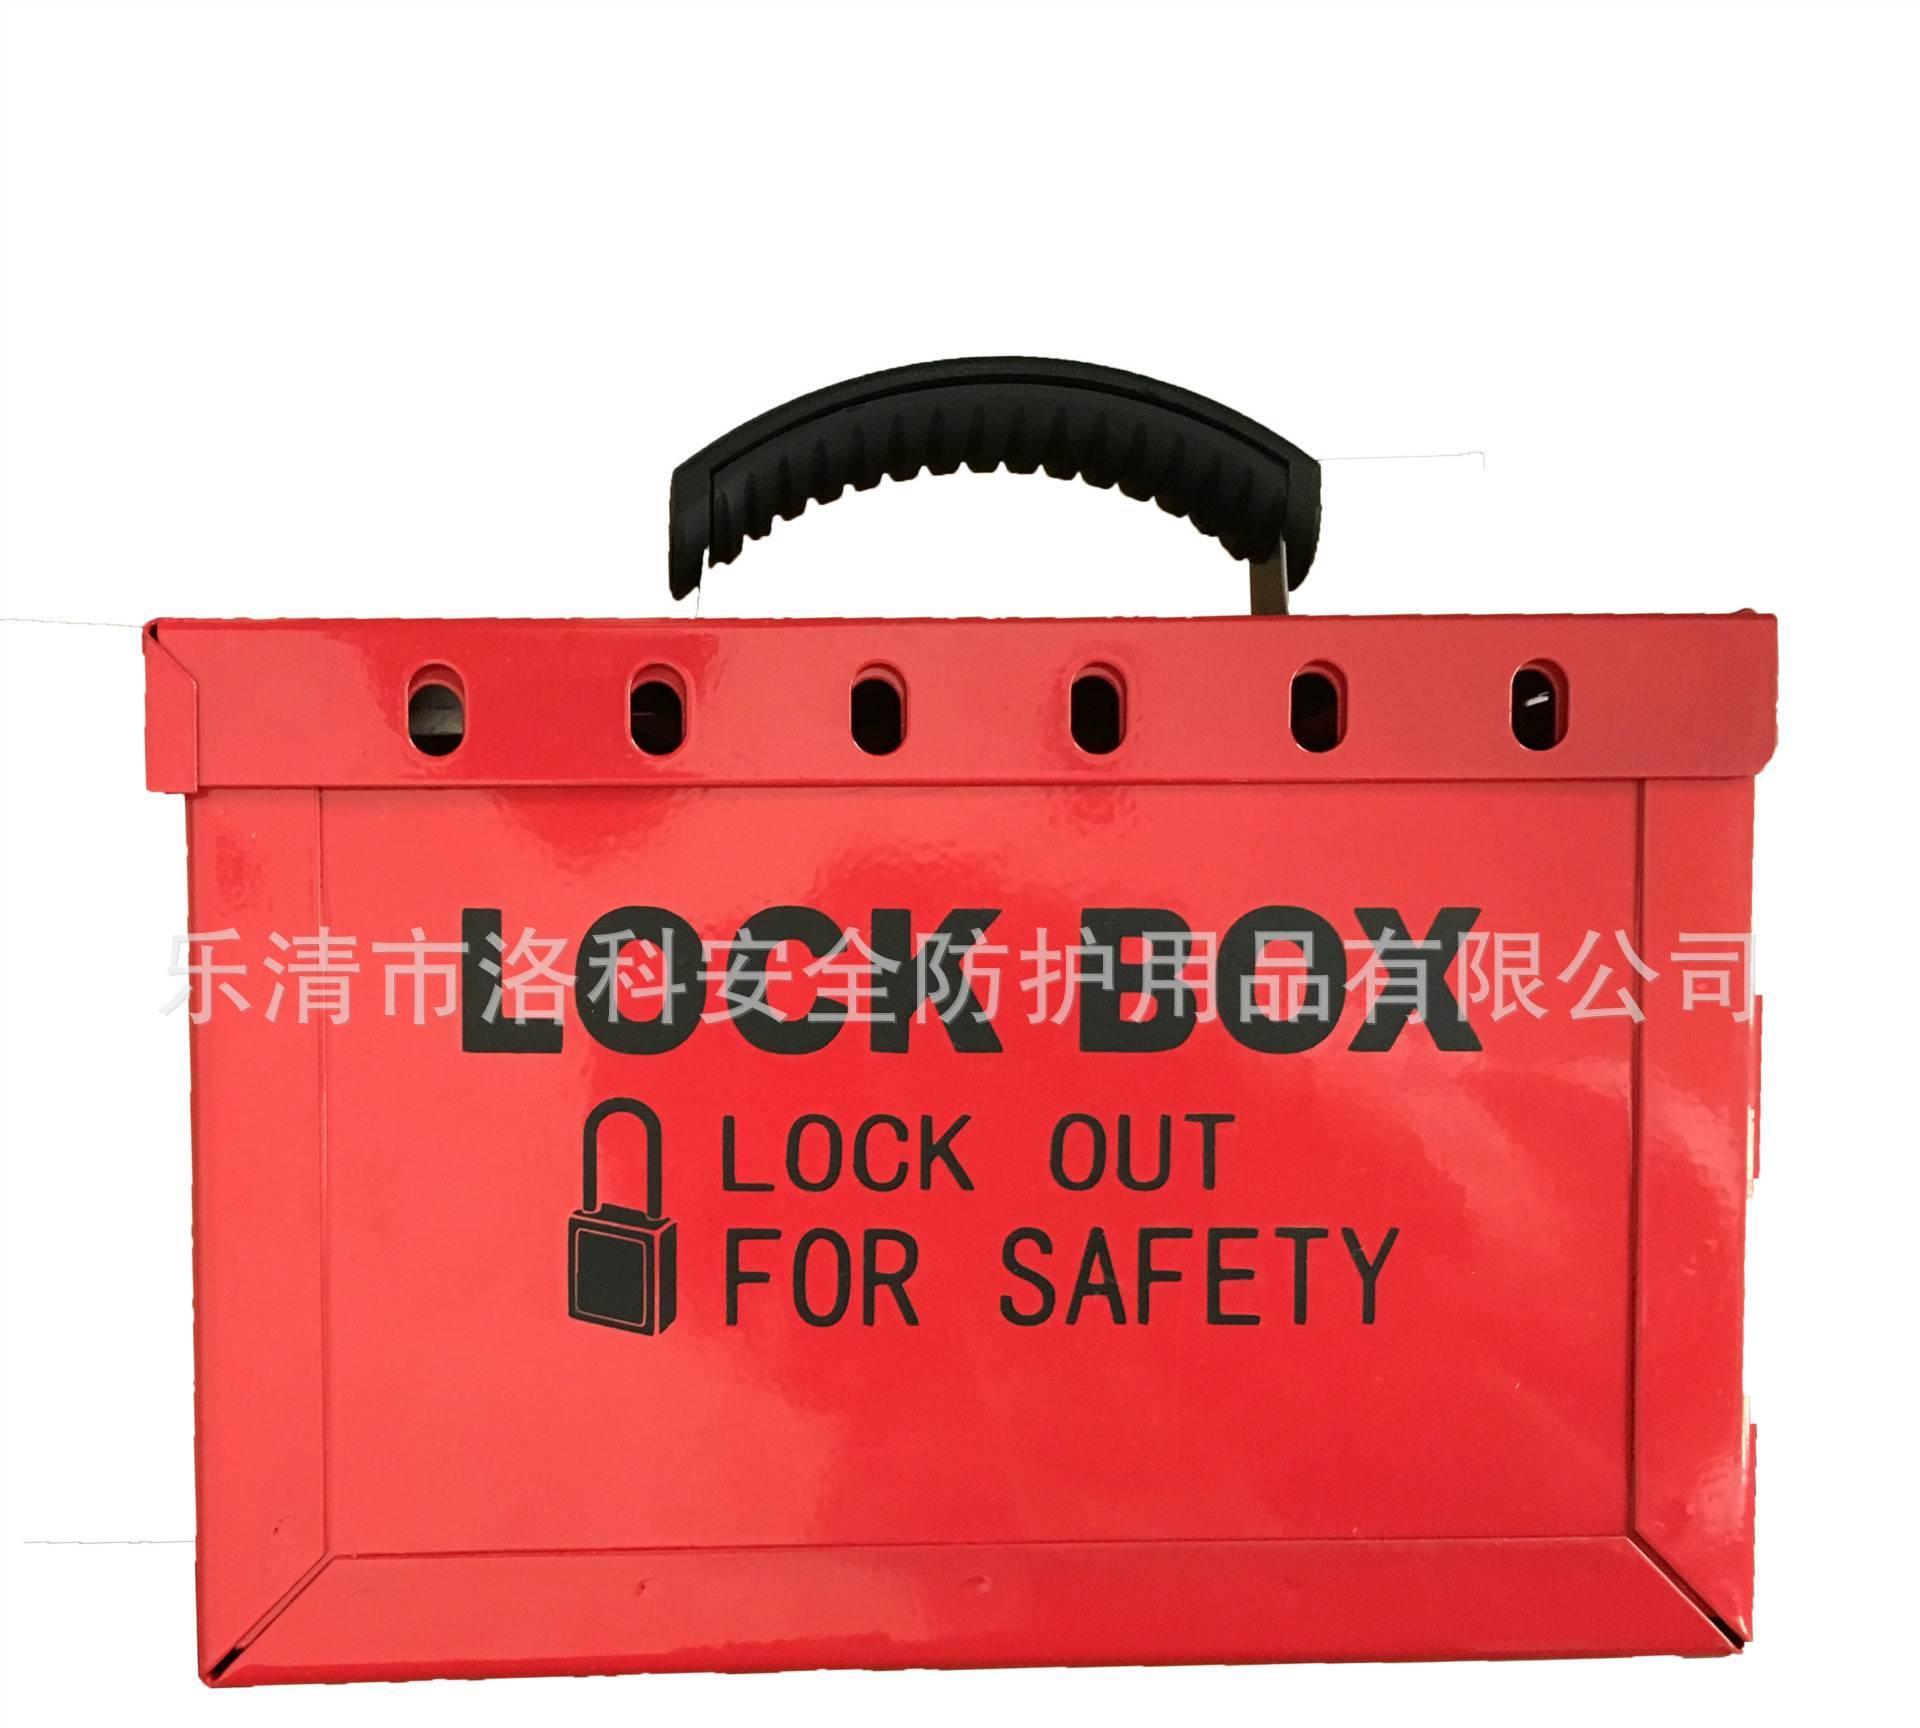 【厂家直销】 个人安全挂锁工具手提箱  锁具站 箱子示例图4